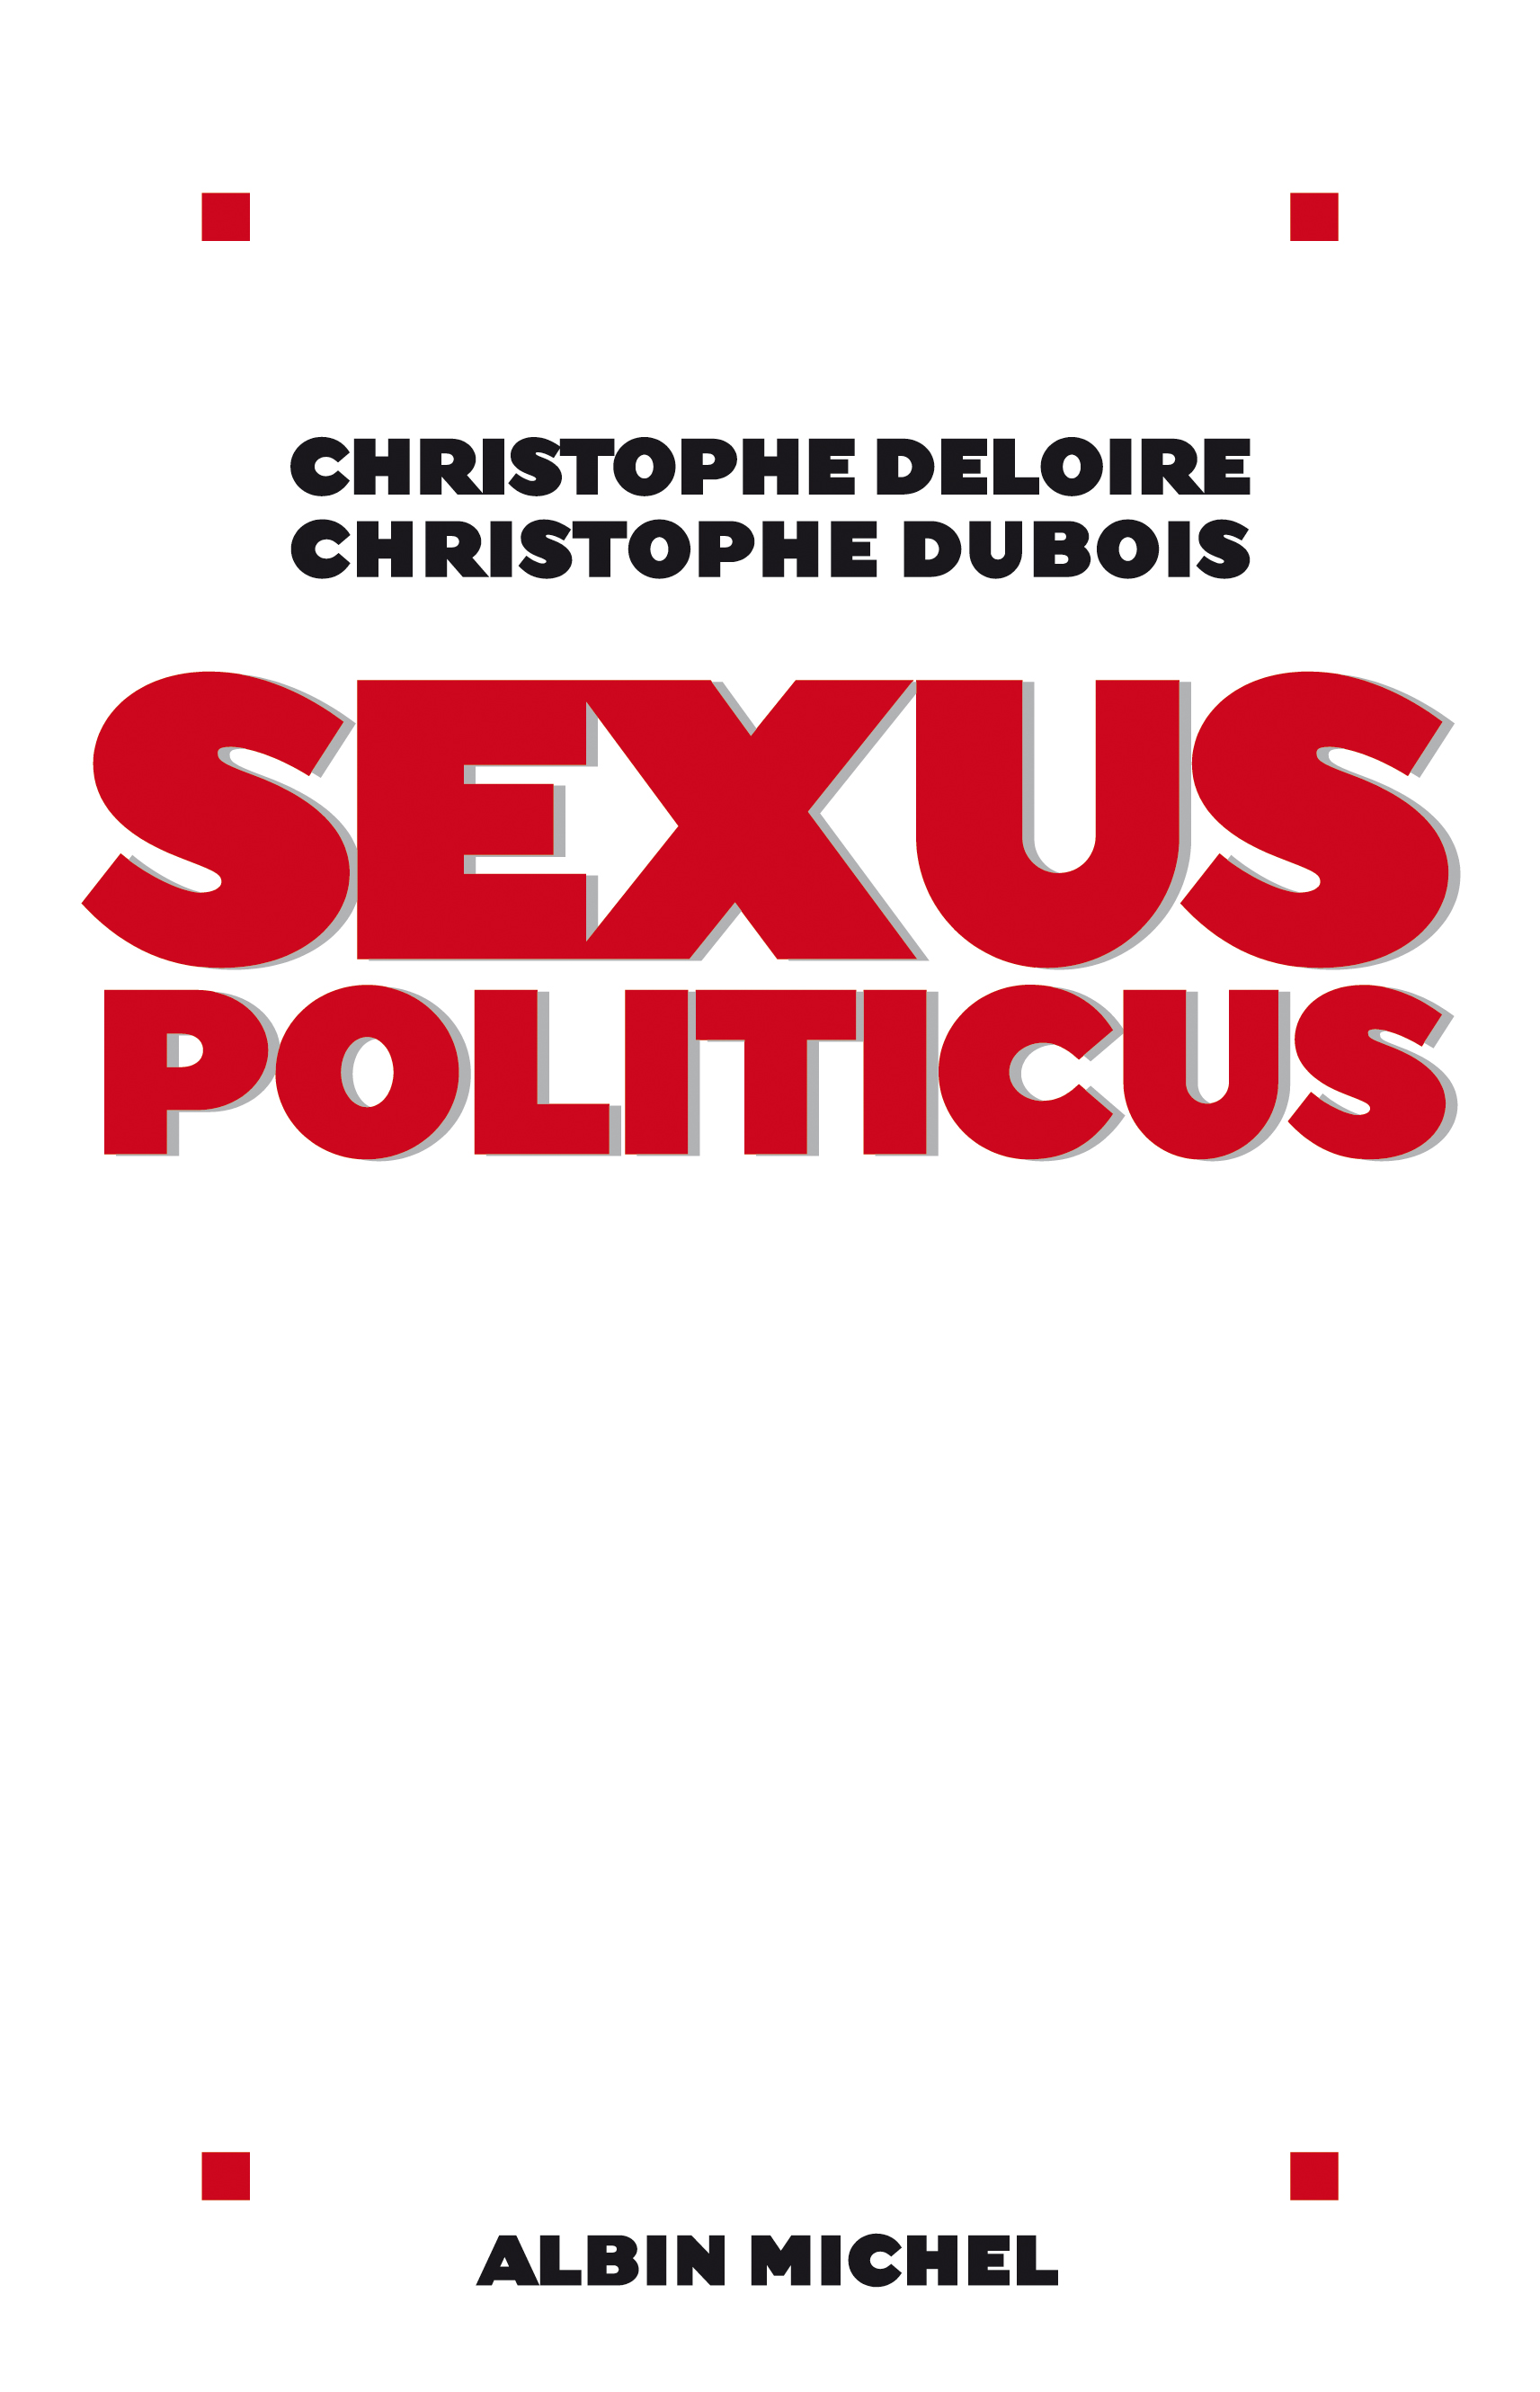 Couverture du livre Sexus politicus